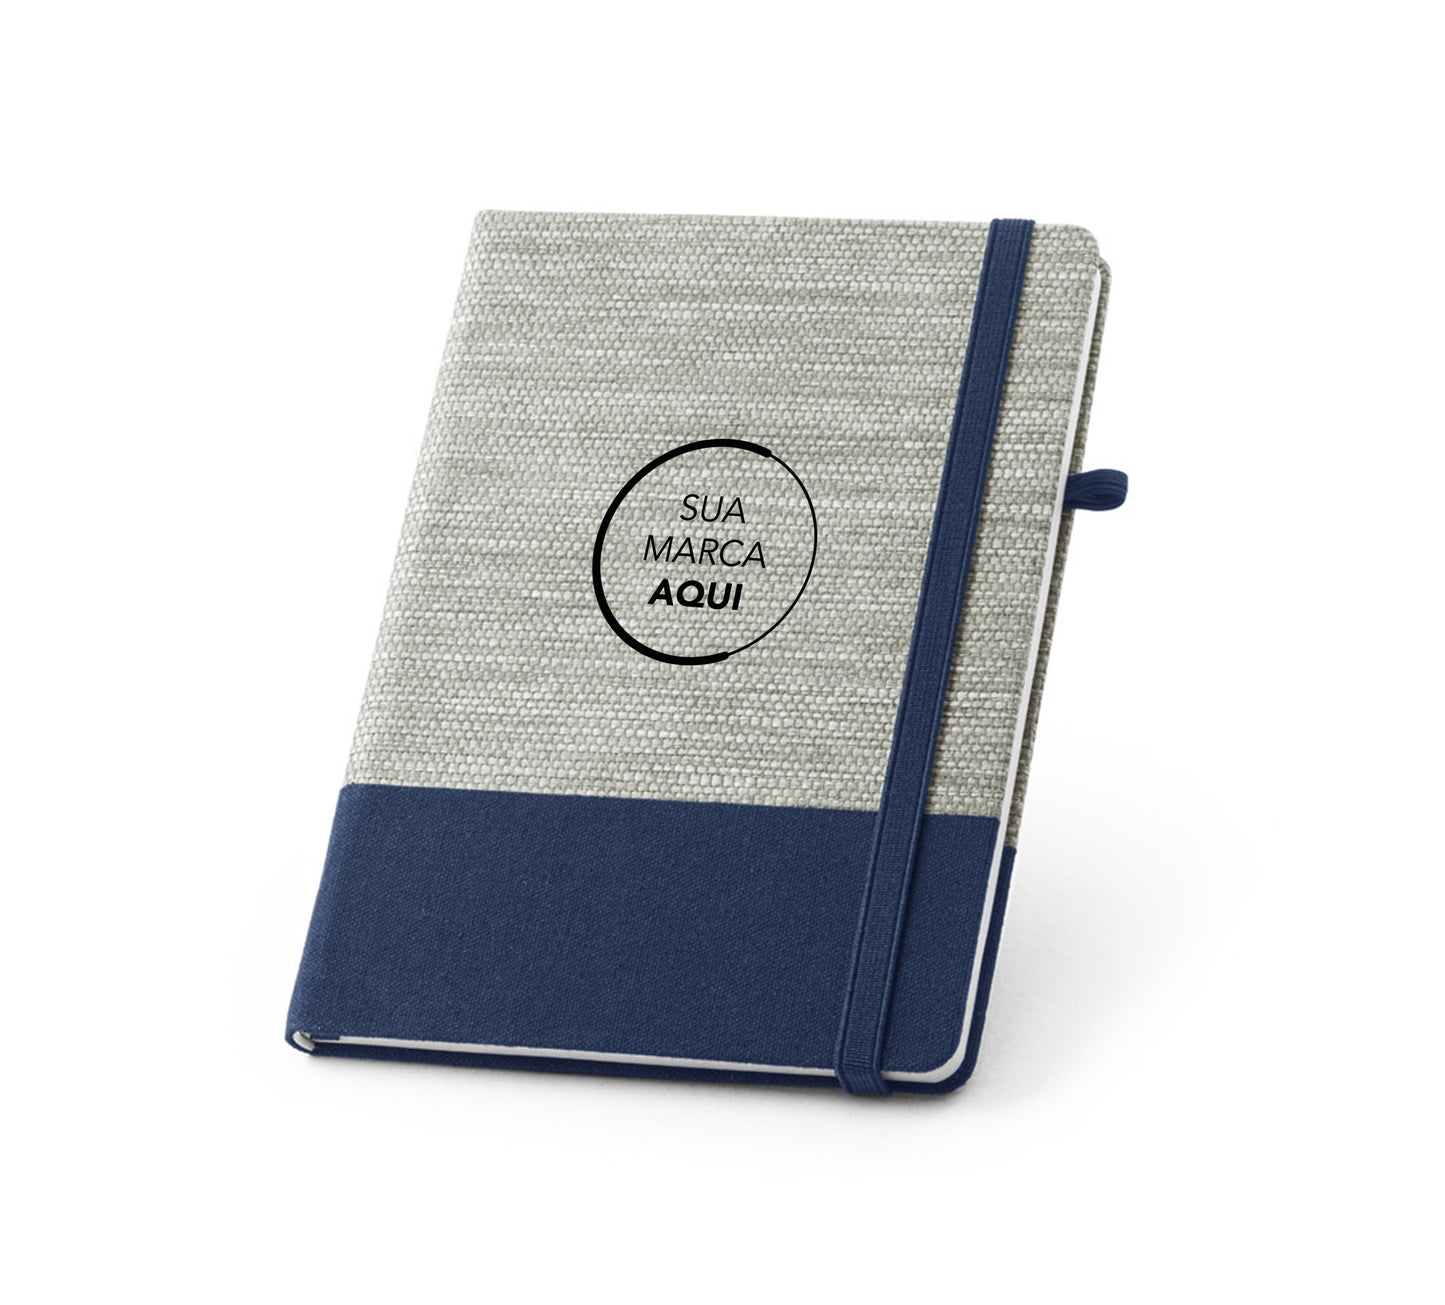 Caderno A5 com capa dura em palha e algodão [0010]